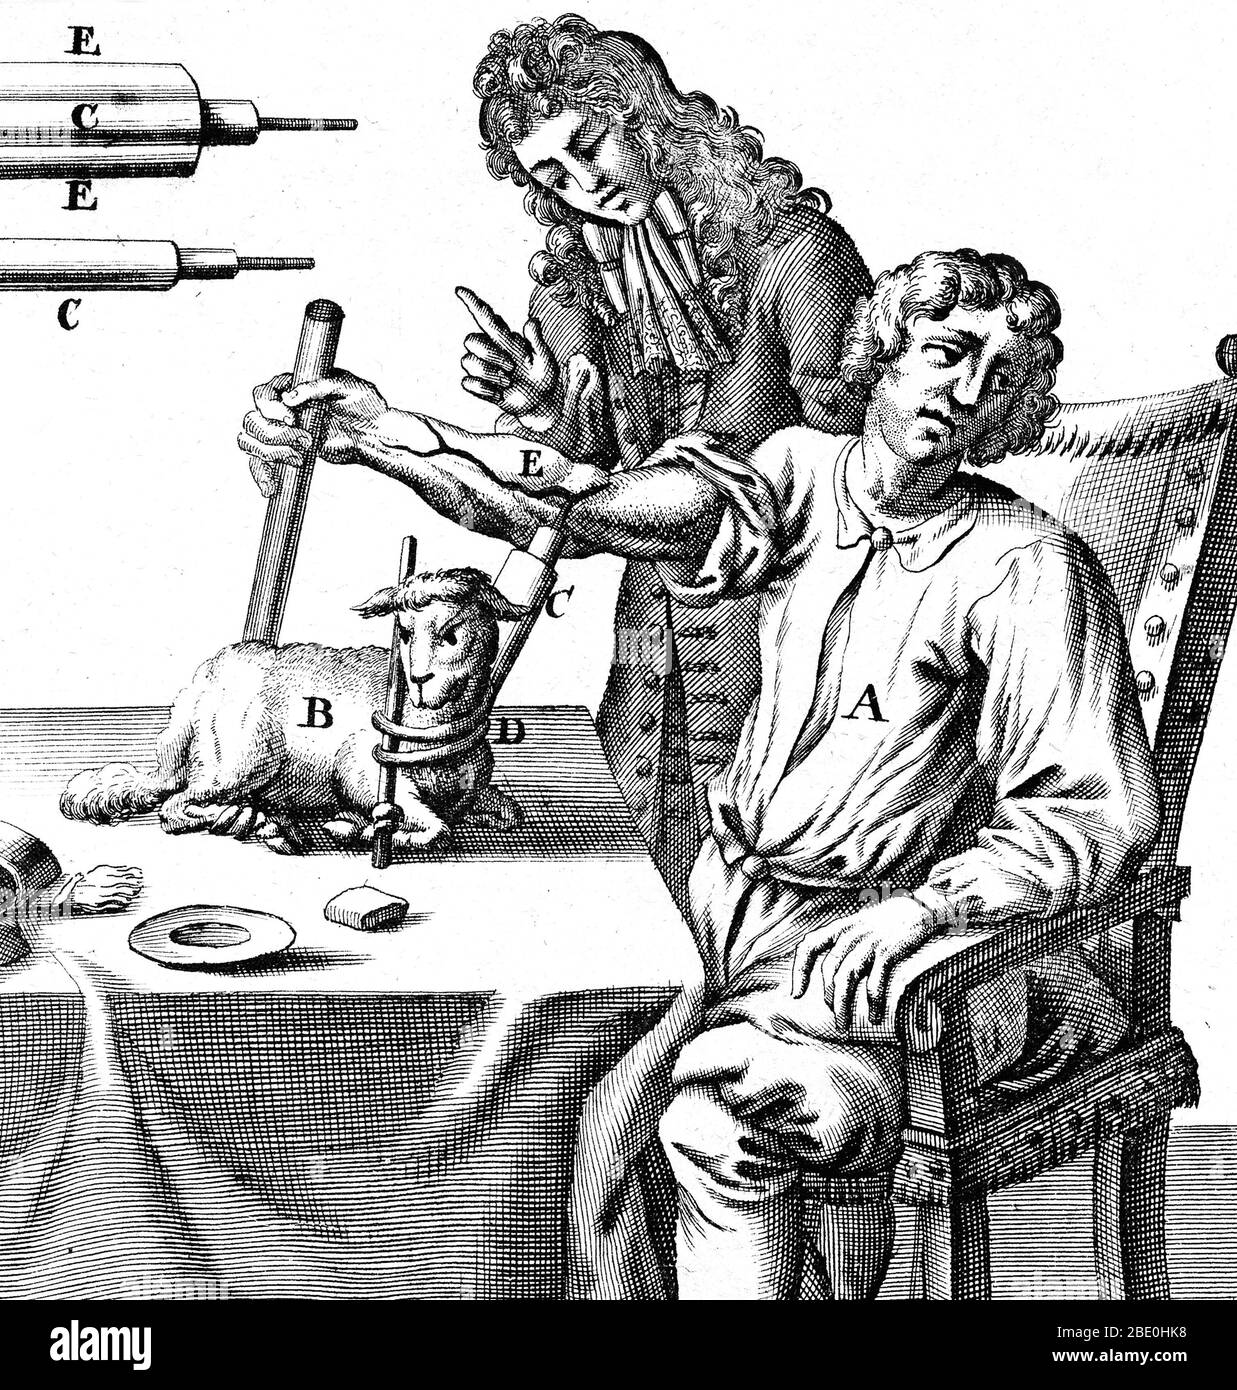 Frühe Bluttransfusion. Historische Kunstwerke des englischen Physiologen Richard Lower (1631-1691), der 1667 Blut von einem Lamm in den Arm eines Mannes transfusing. Das Ende der Röhre, die zur Punktion der Blutgefäße und zur Blutübertragung verwendet wird, befindet sich oben links. Lower First zeigte die Transfusion von Blut von der Arterie eines Hundes in die Vene eines anderen im Jahr 1665. Spätere Versuche anderer, von Tieren auf Menschen umzutransfusionieren, führten zu einigen Todesfällen. Lower's Abhandlung über das Herz beschreibt das Herz als muskuläre Pumpe und nicht als ein Organ, das von Geistern 'aufgeblasen' wird. Er zog daraus das helle Rot des arteriellen Blutes Stockfoto